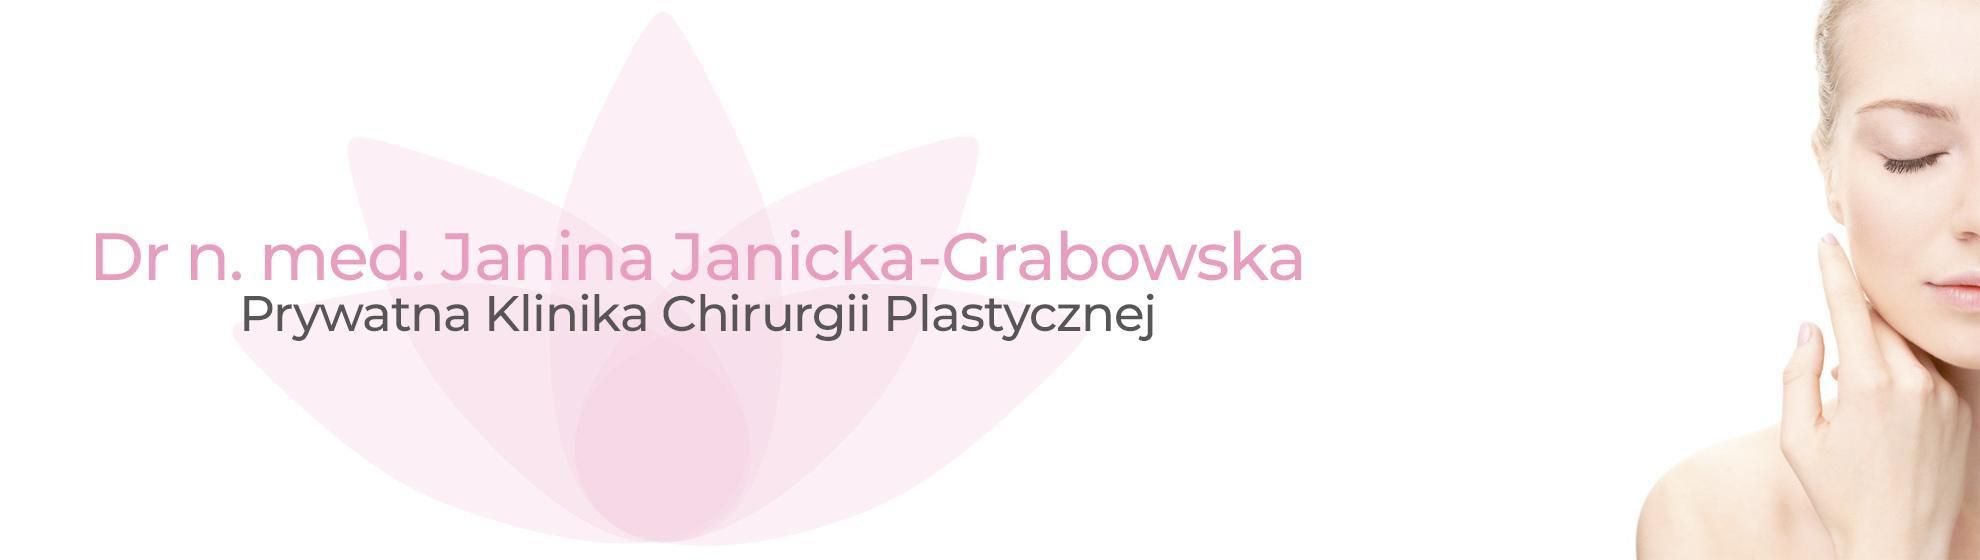 Dr n. med. Janina Janicka-Grabowska